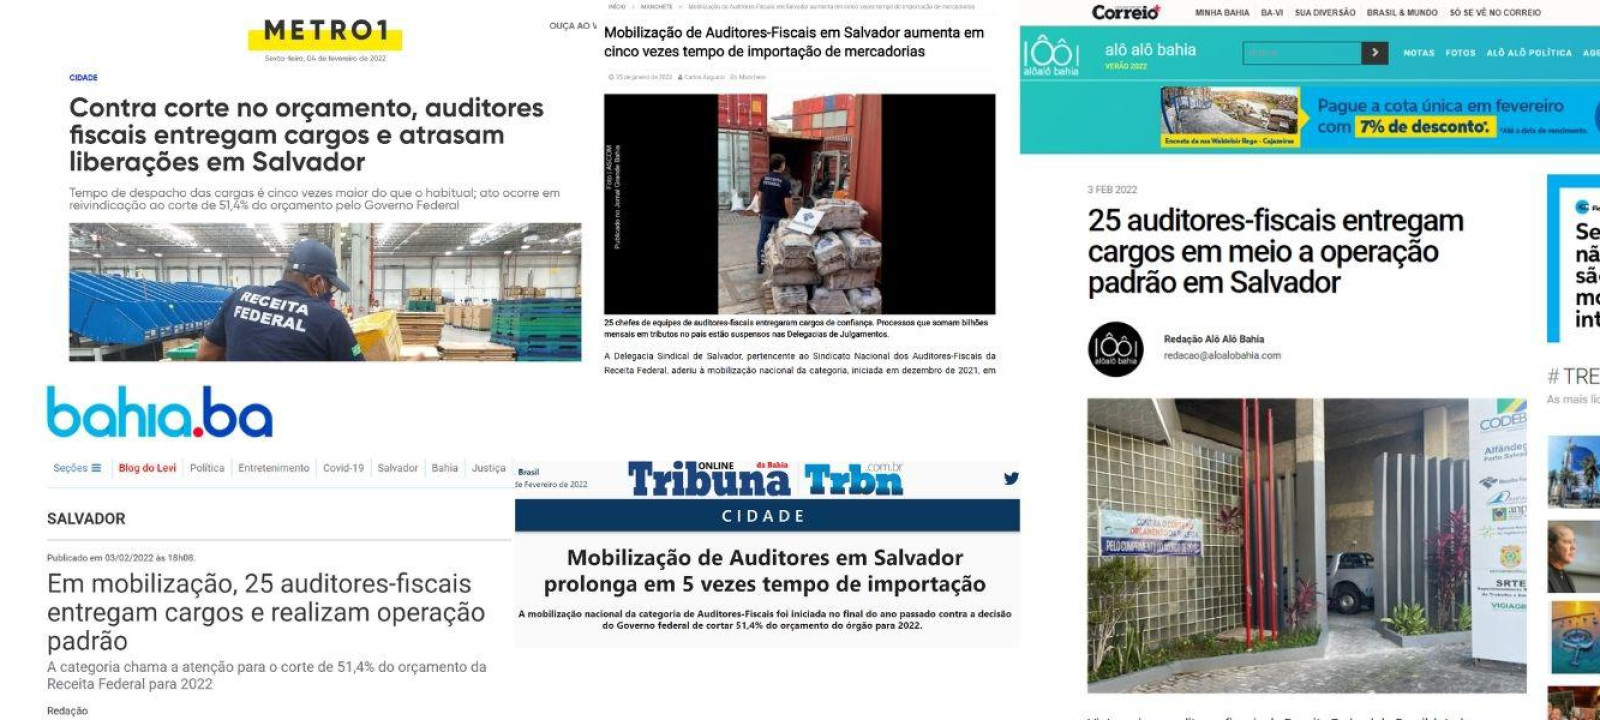 Adesão dos auditores-fiscais de Salvador à mobilização ganha repercussão na imprensa 